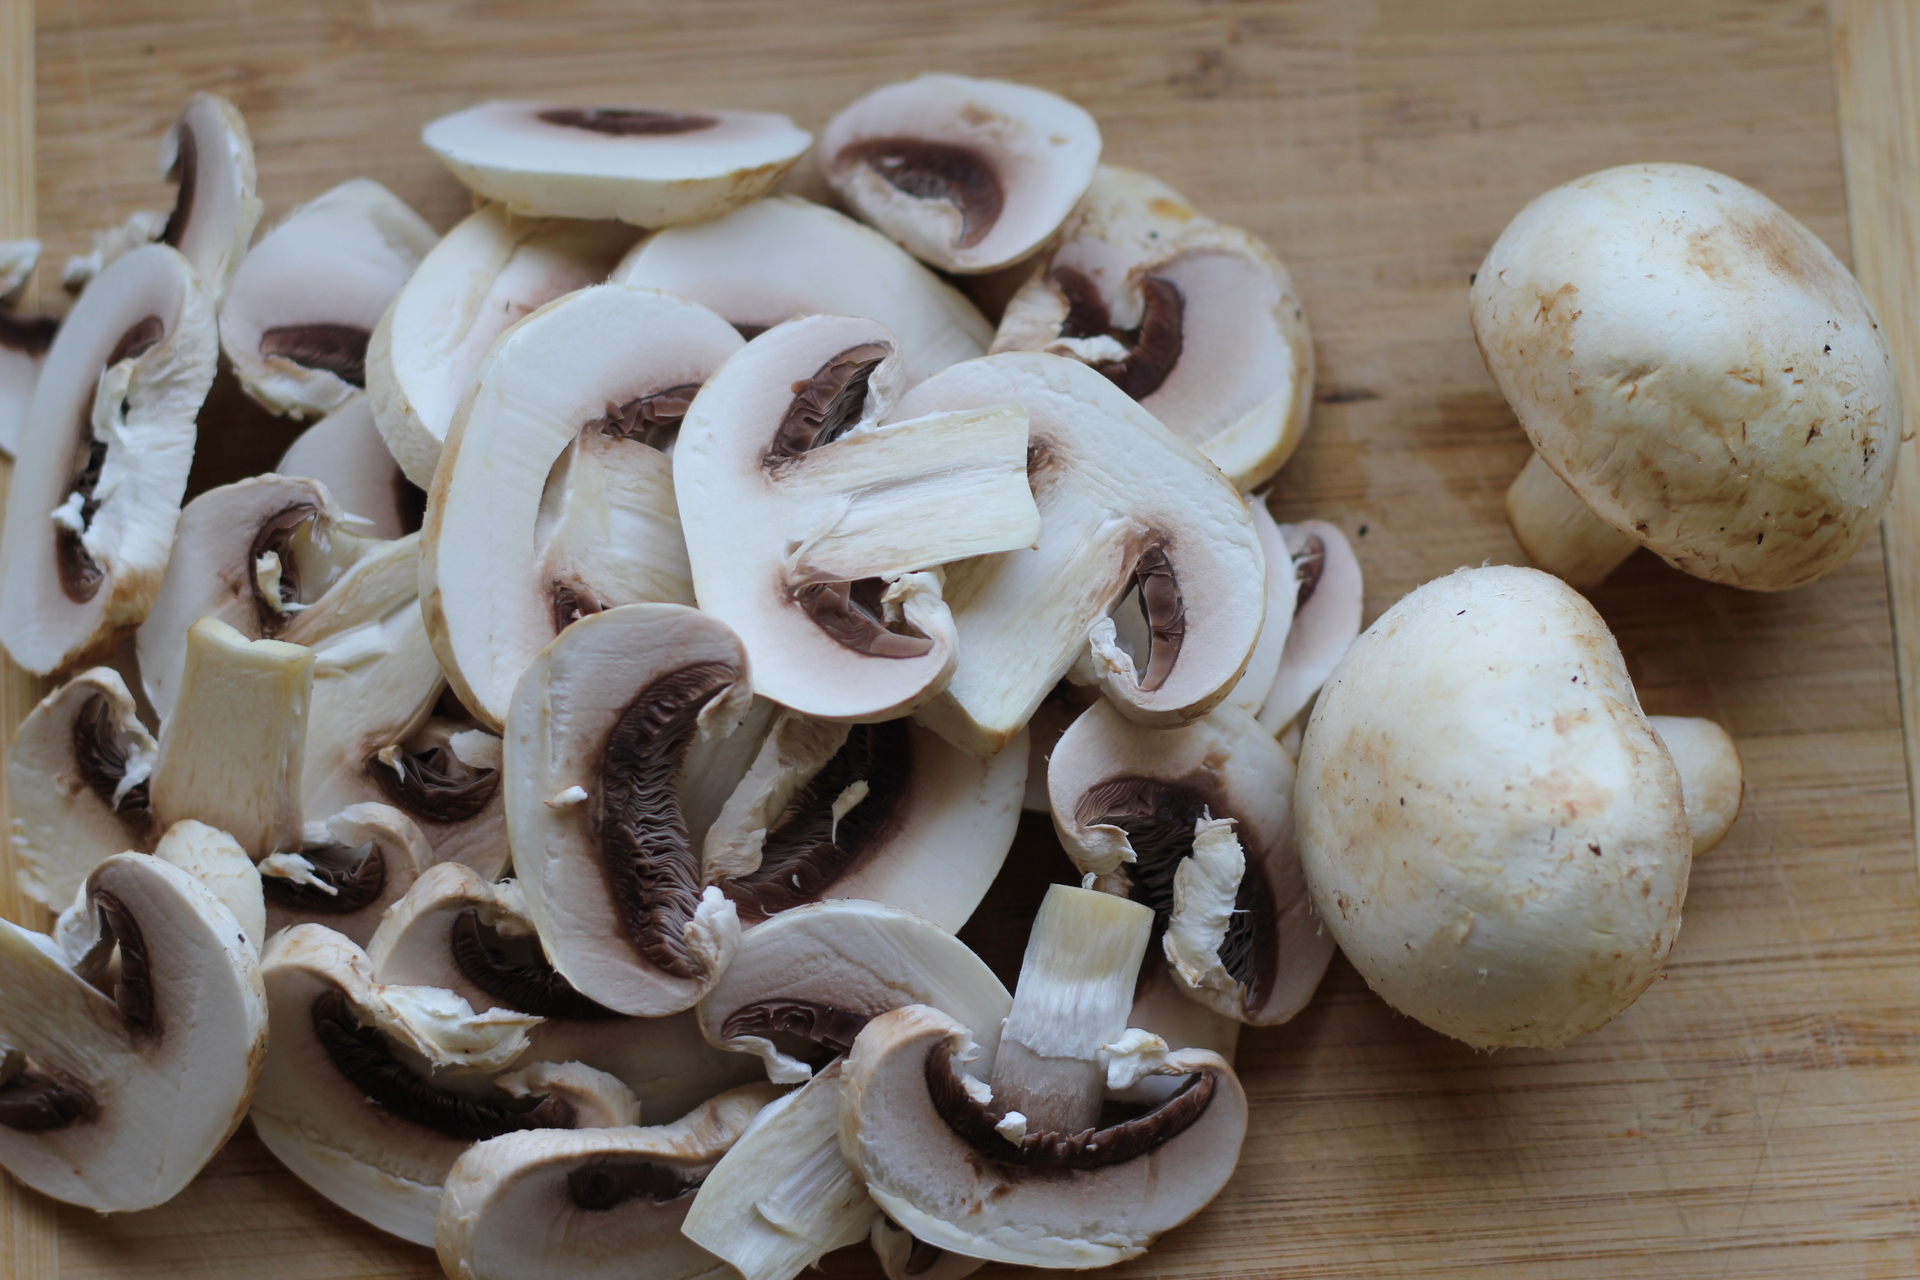 А теперь давайте приготовим грибочки. Обмоем их, нарежем на полоски. Разогреем сковородку, нальем в нее растительного масла и обжарим грибы.